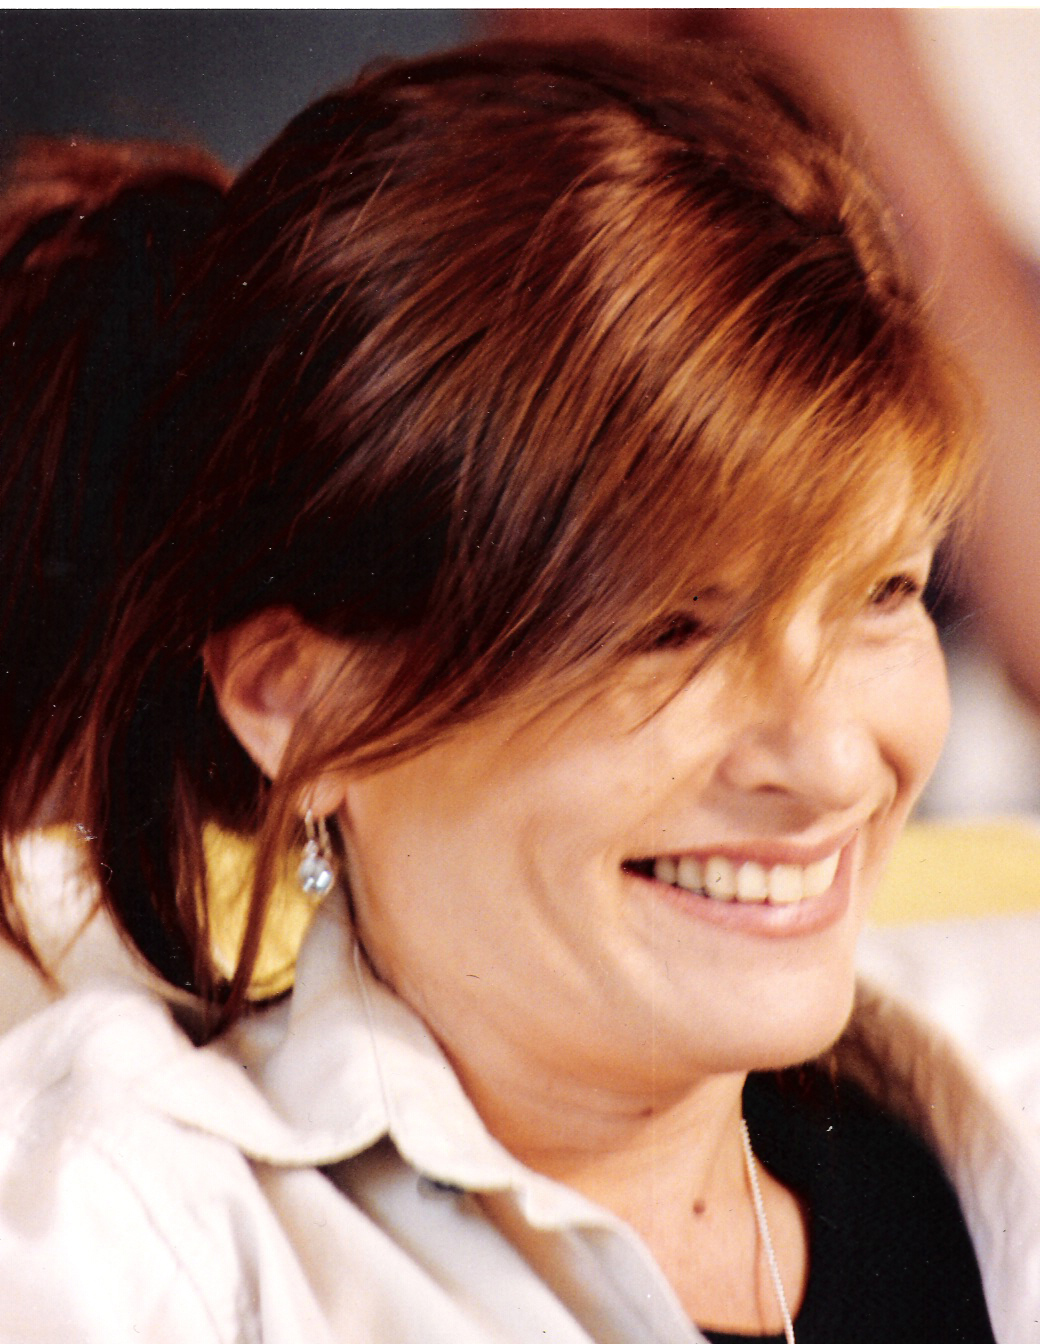 María Teresa Costantini